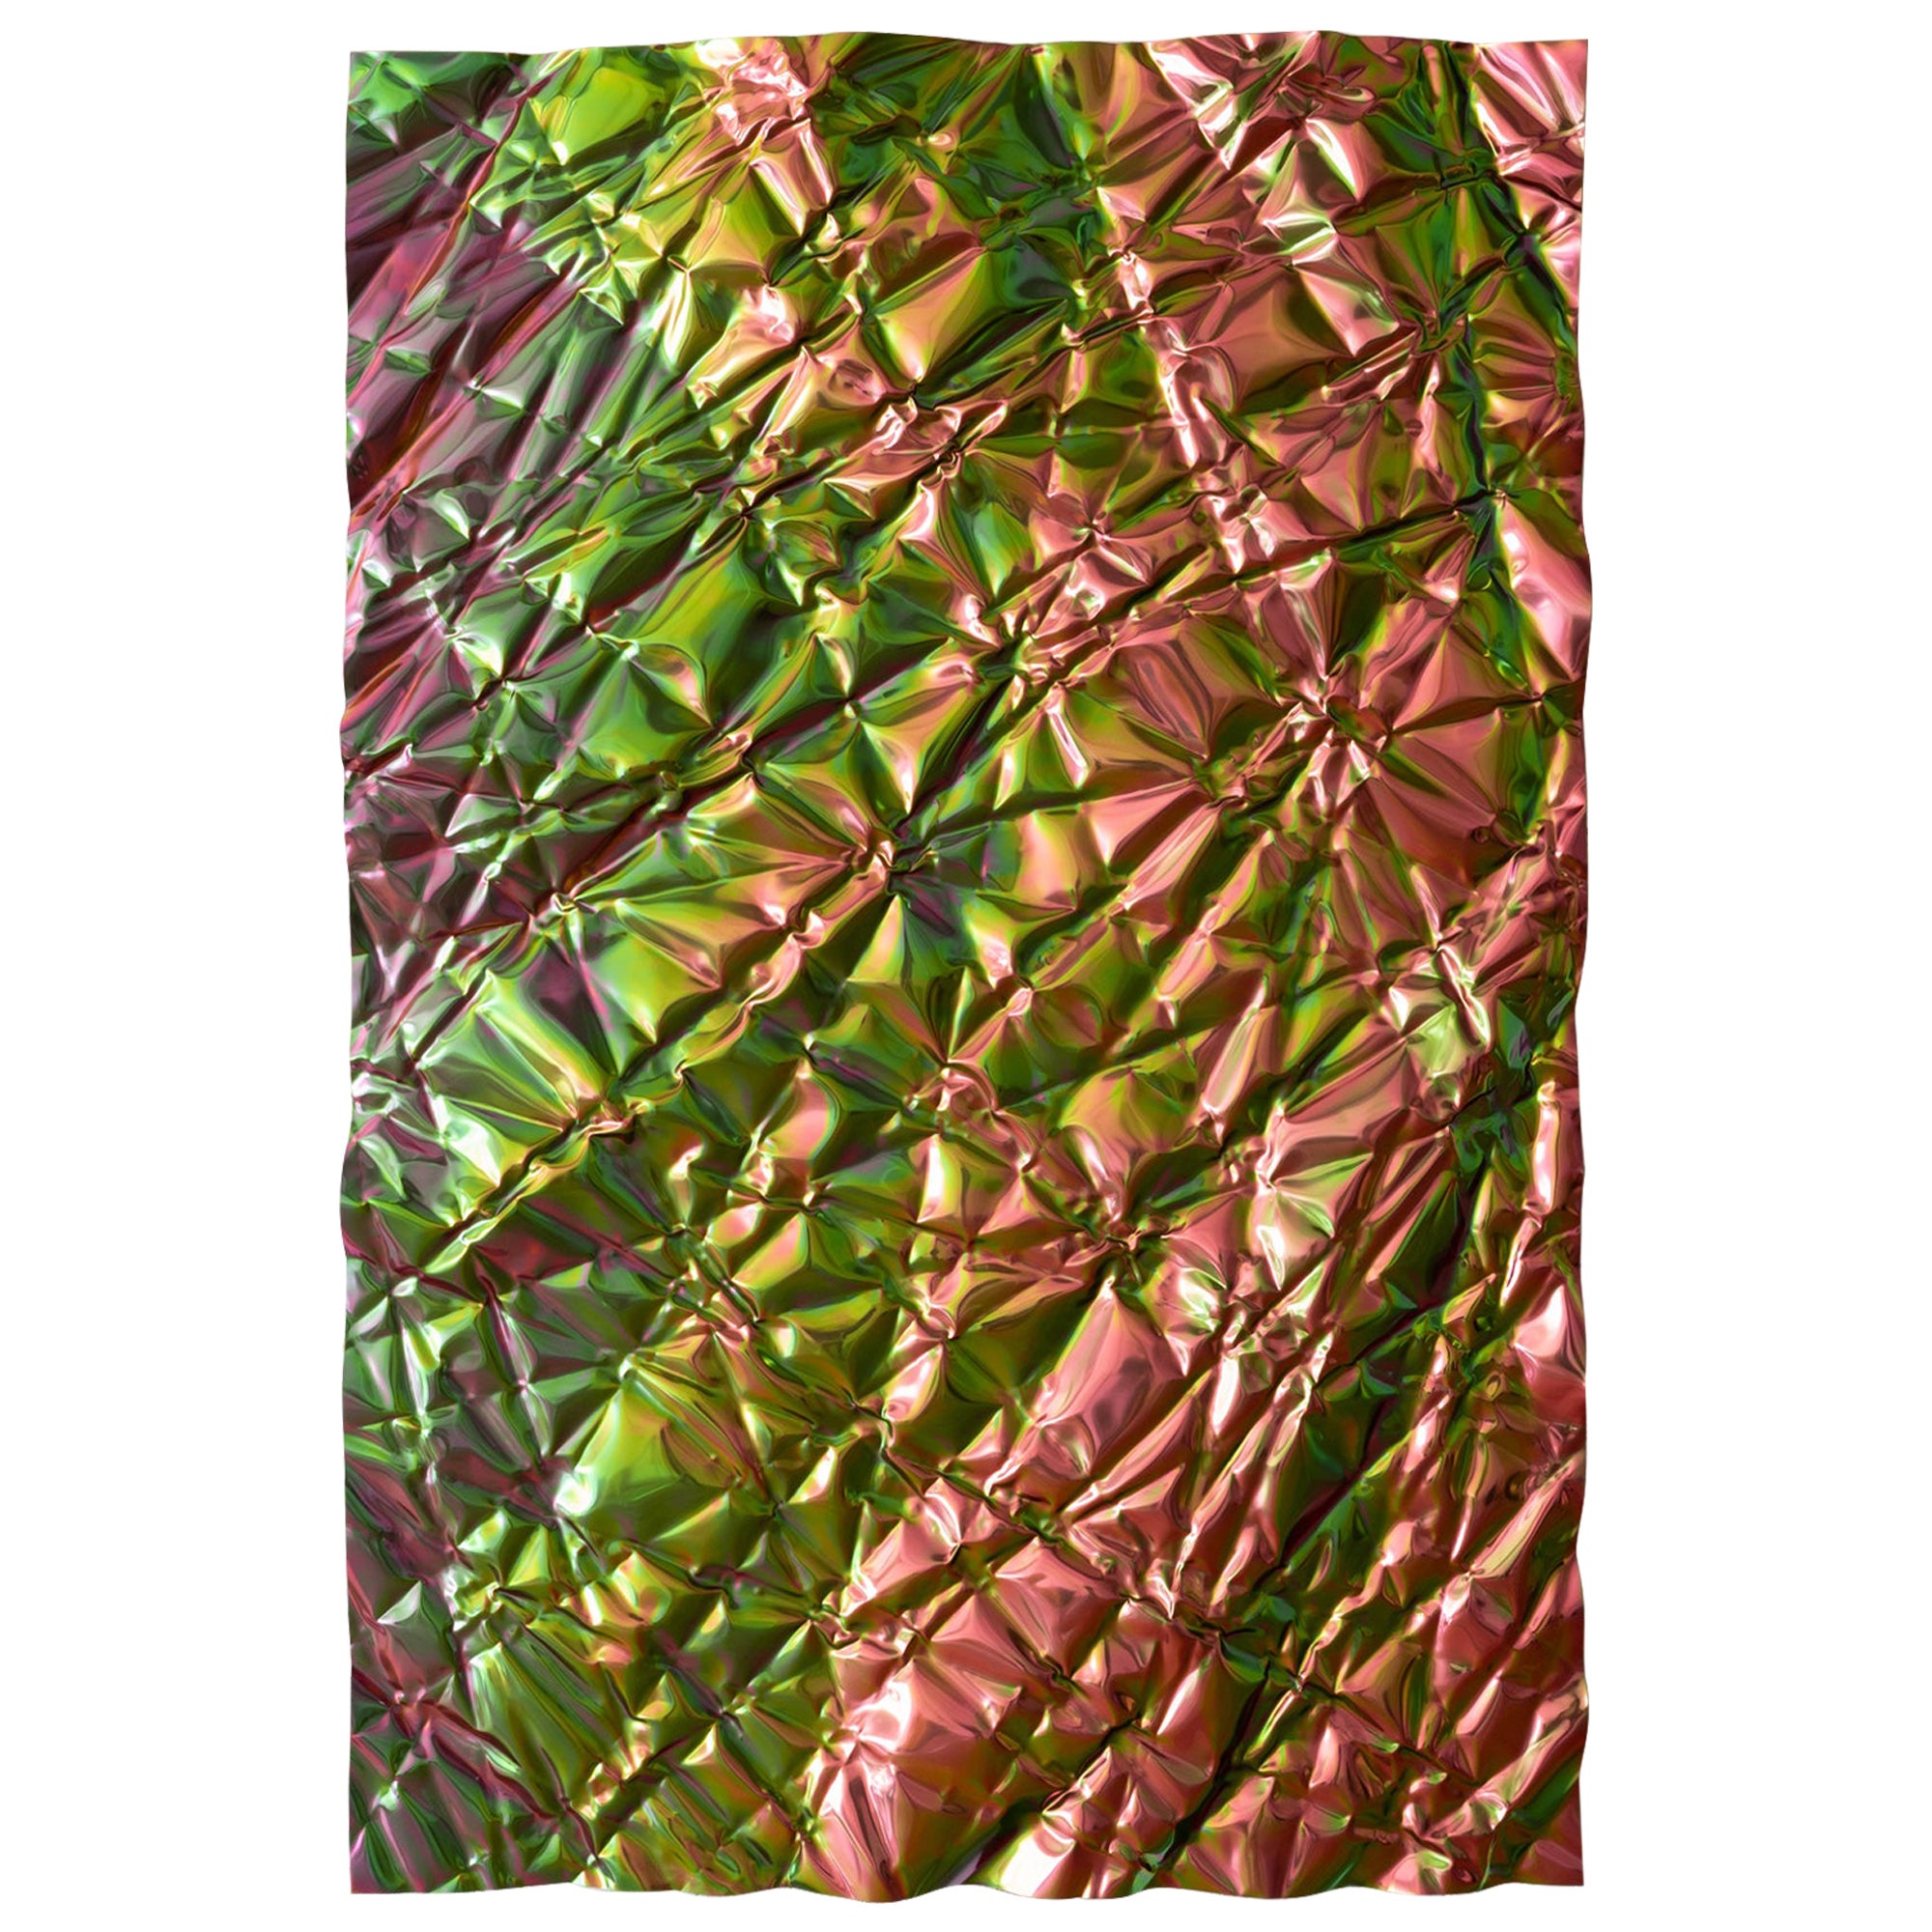 Christopher Prinz Wrinkled Panel in poliertem, schillerndem Regenbogen-Paneel